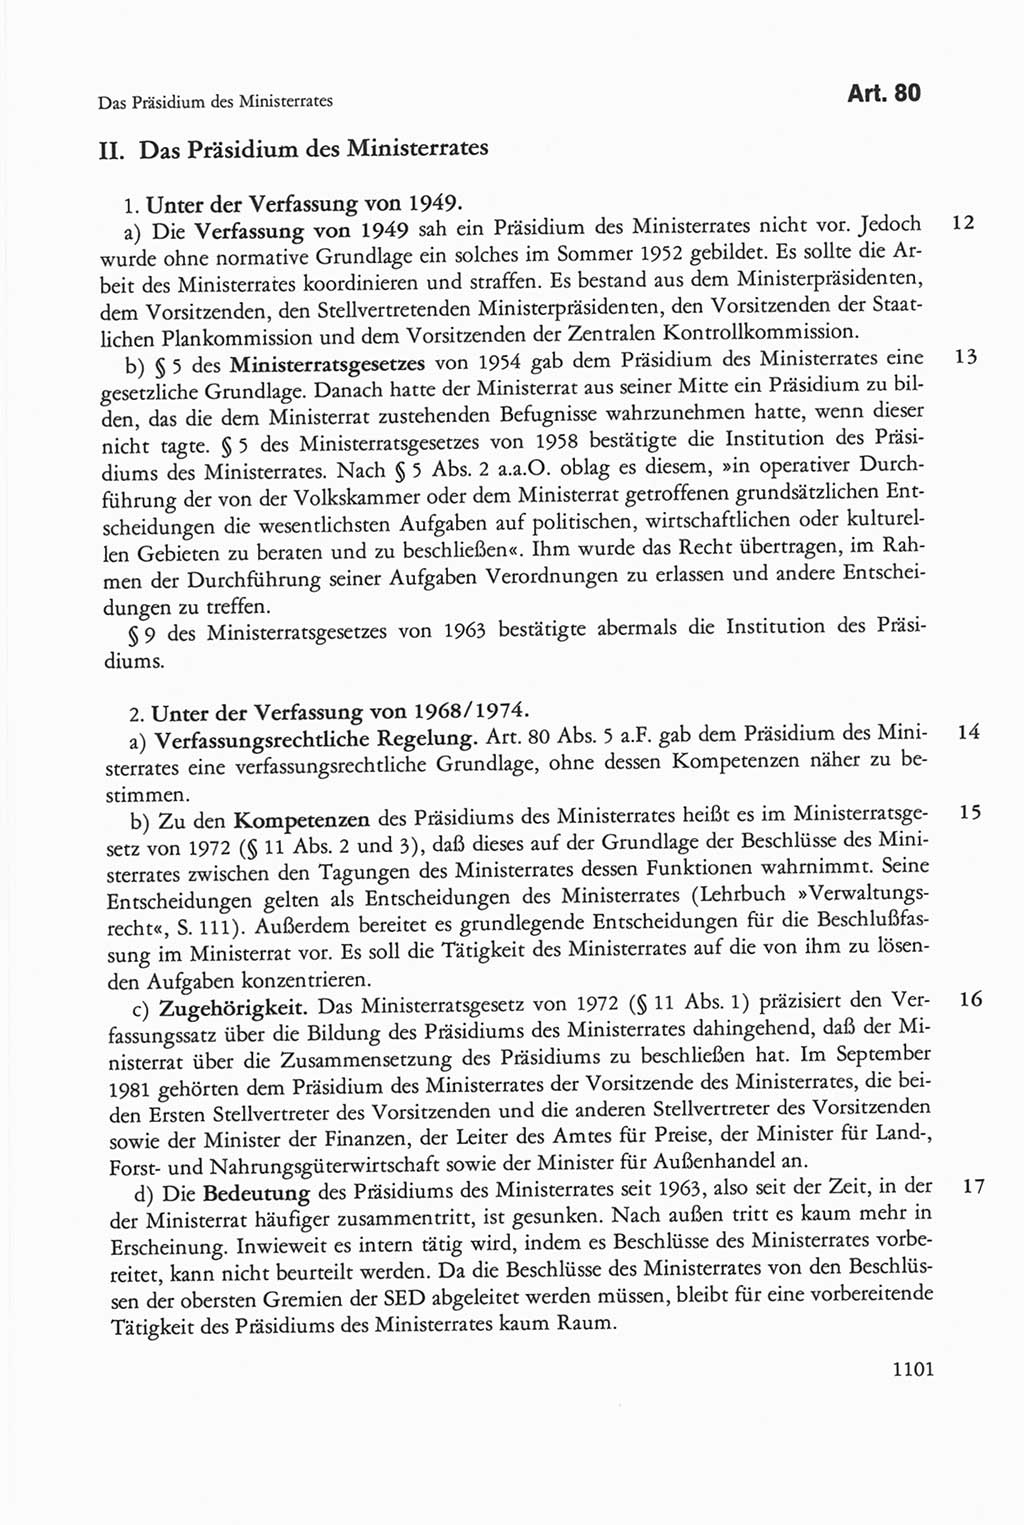 Die sozialistische Verfassung der Deutschen Demokratischen Republik (DDR), Kommentar mit einem Nachtrag 1997, Seite 1101 (Soz. Verf. DDR Komm. Nachtr. 1997, S. 1101)